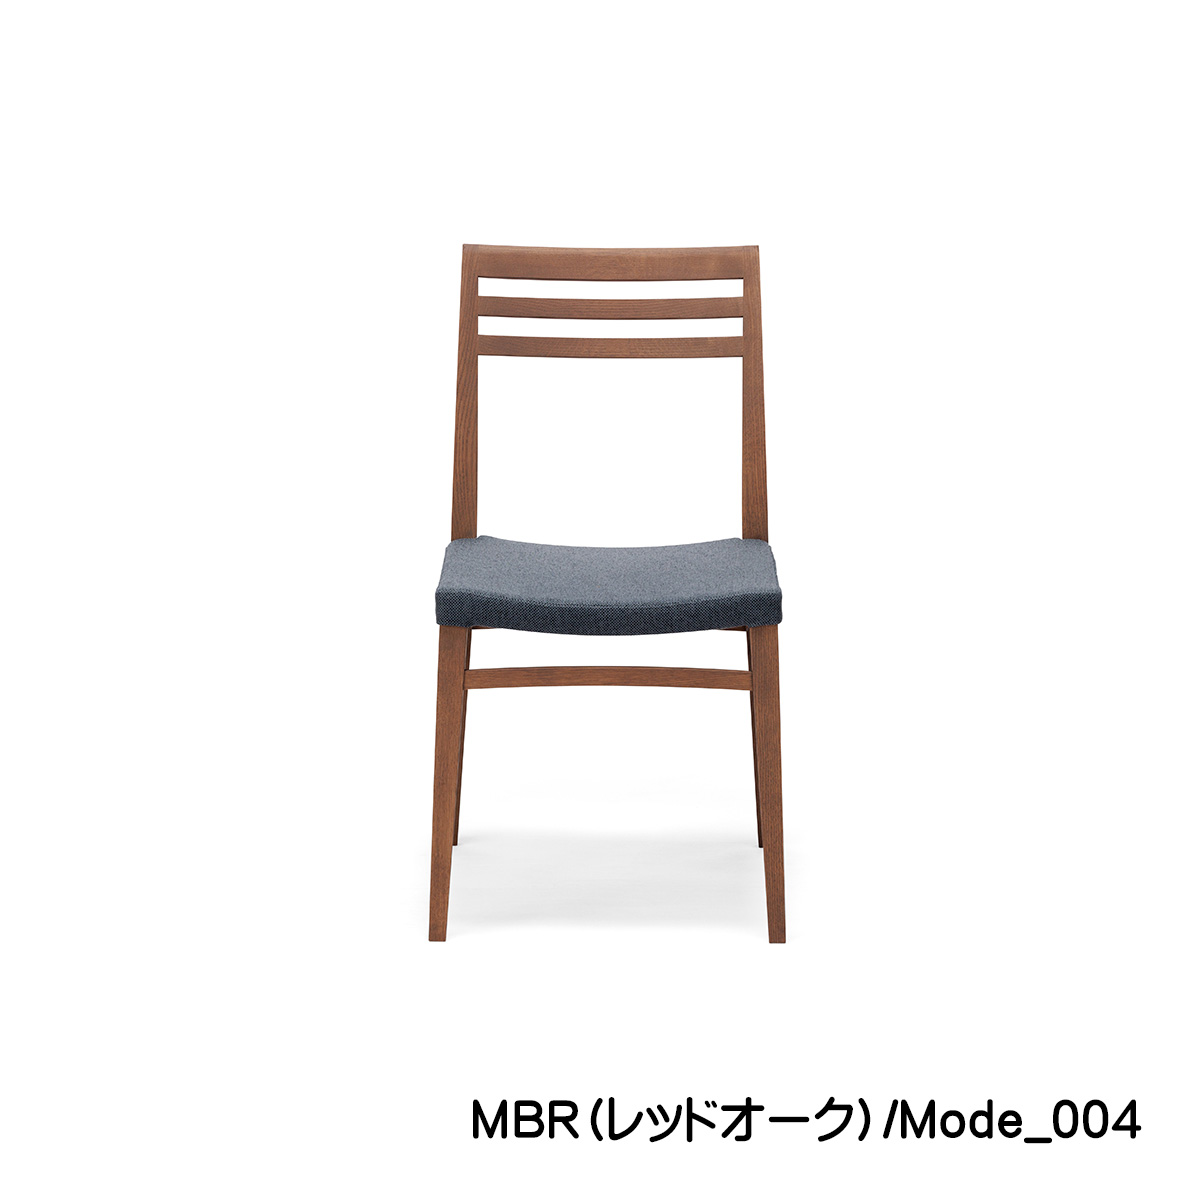 ダイニングチェア「FIKA（フィーカ）」のブラウン色は、背もたれは木製の横格子で、座面は優しく中央がU字型にカーブしておりとても良い座り心地です。